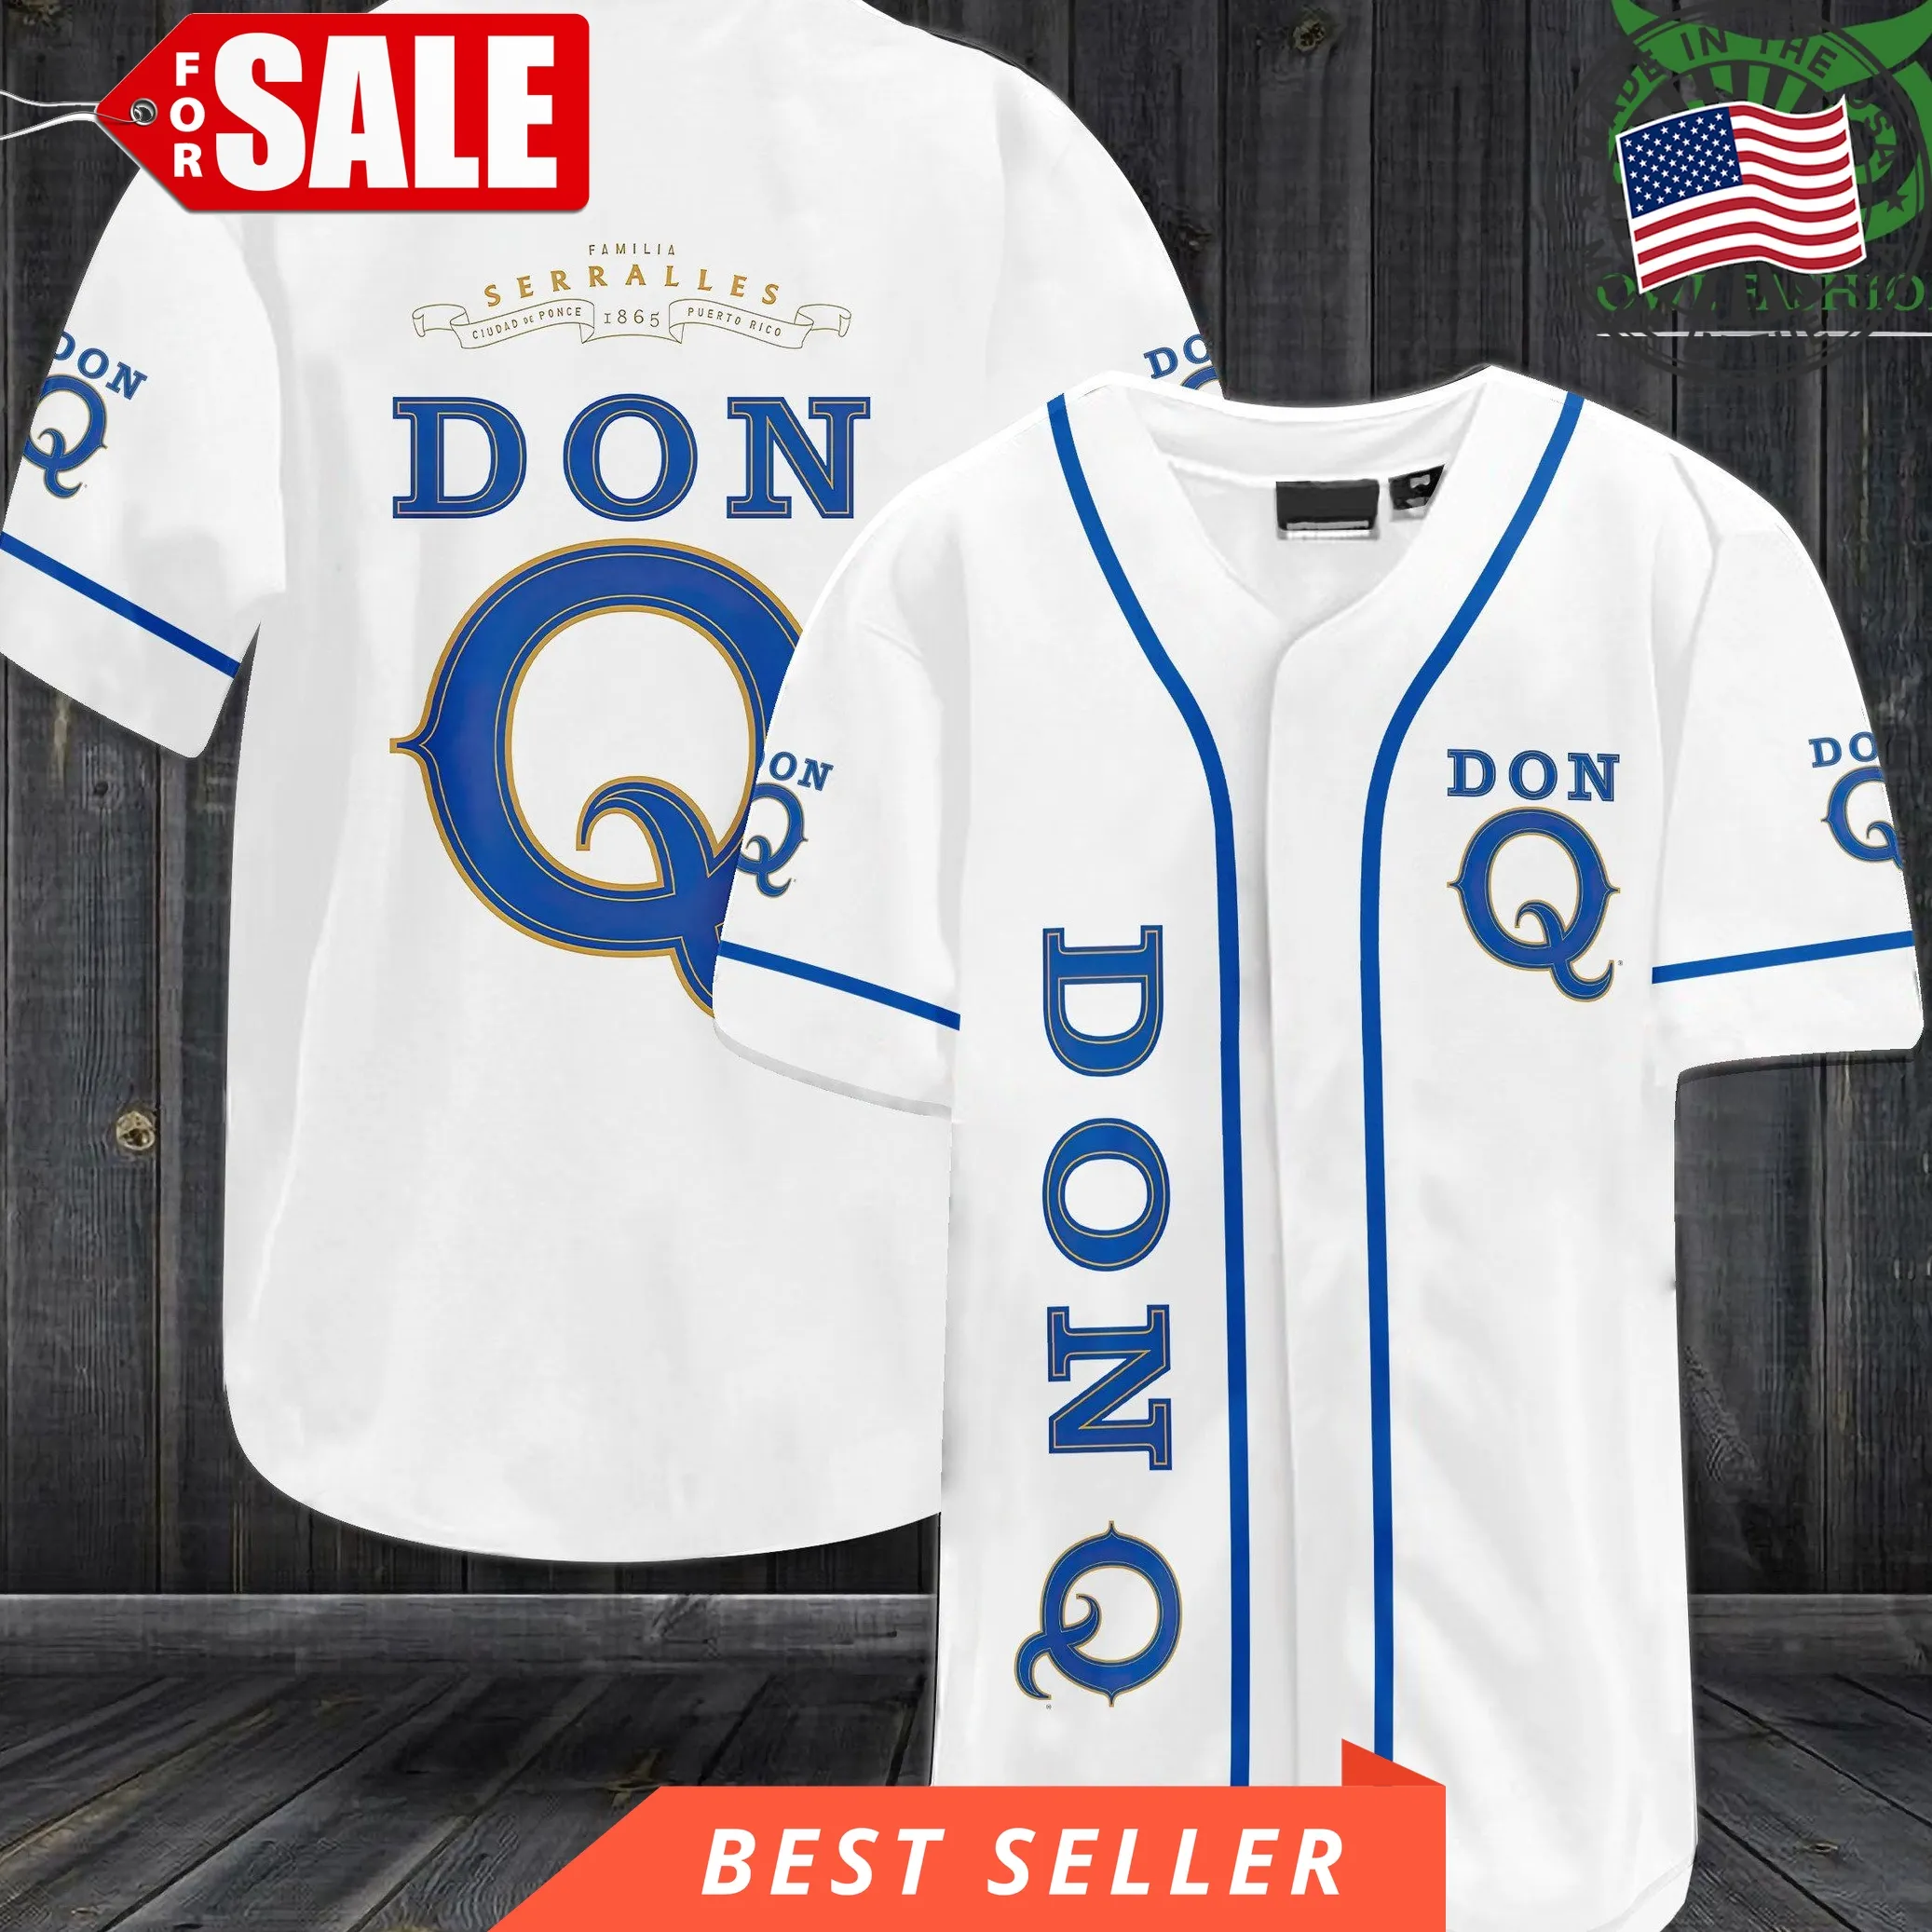 Don Q Seralles Baseball Jersey Shirt